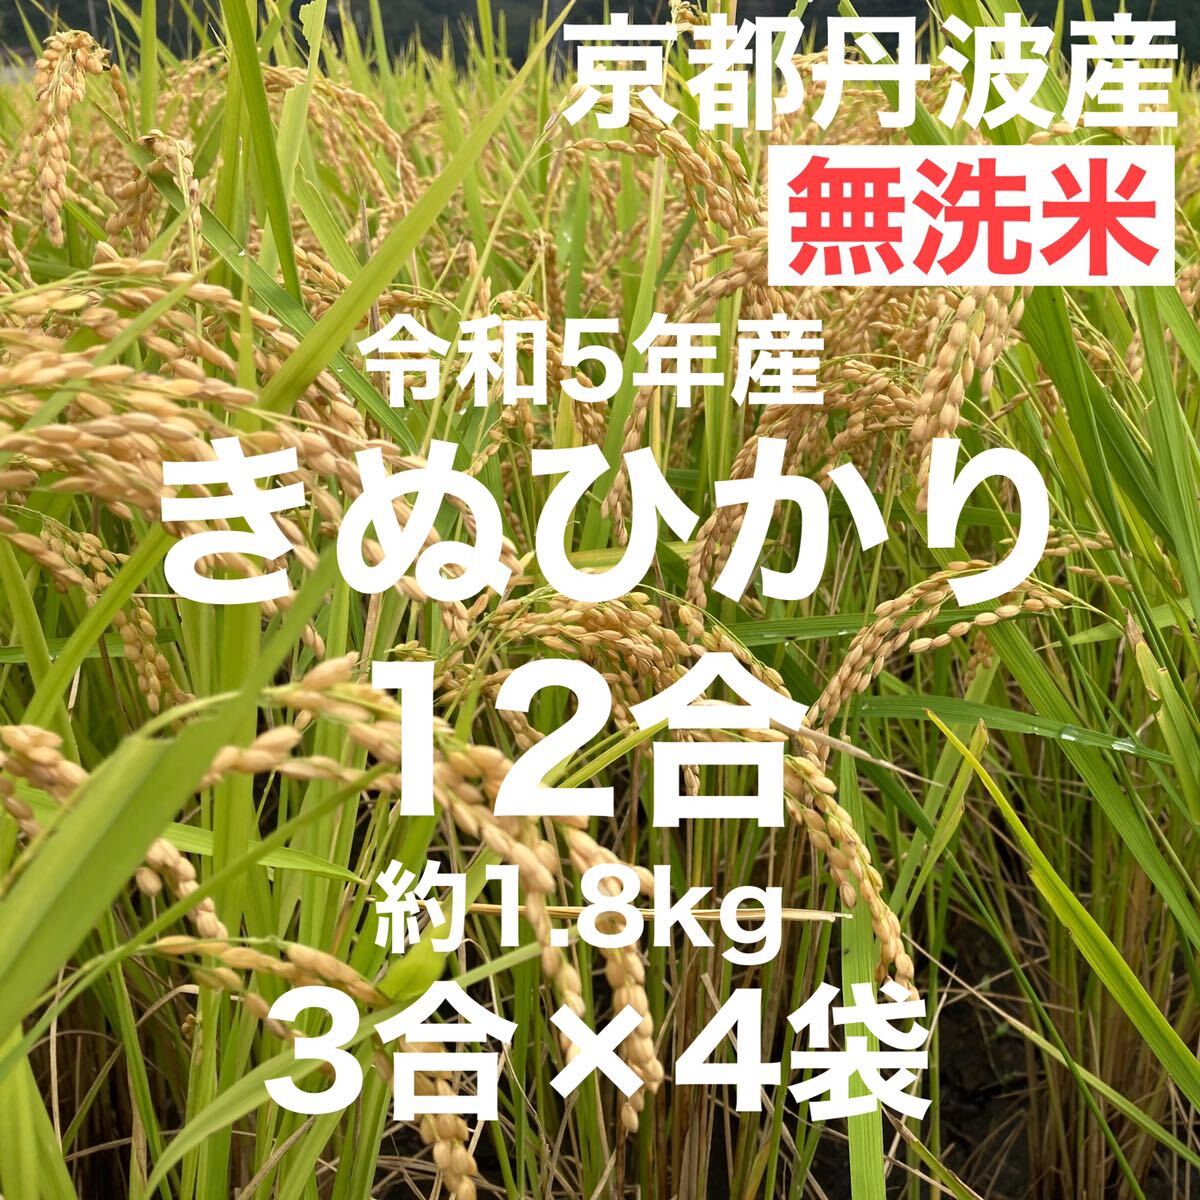 Немного рис 12 go (3 Go × 4 мешки) 1,8 кг Киото Тамба Кинбу Хикари направление 5 лет фермеры